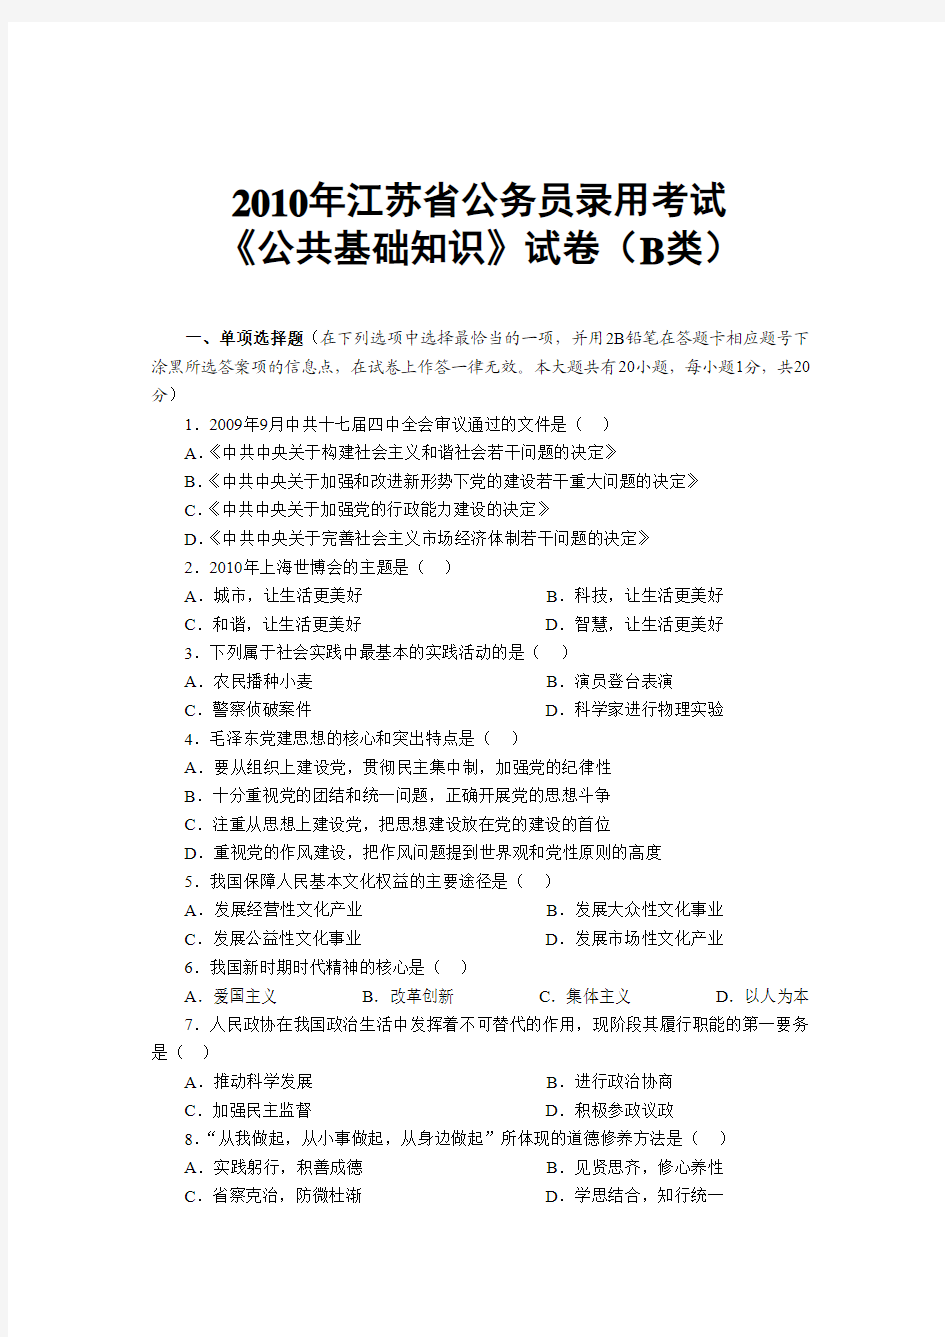 2010江苏公务员考试公共基础知识真题及答案完整版B类